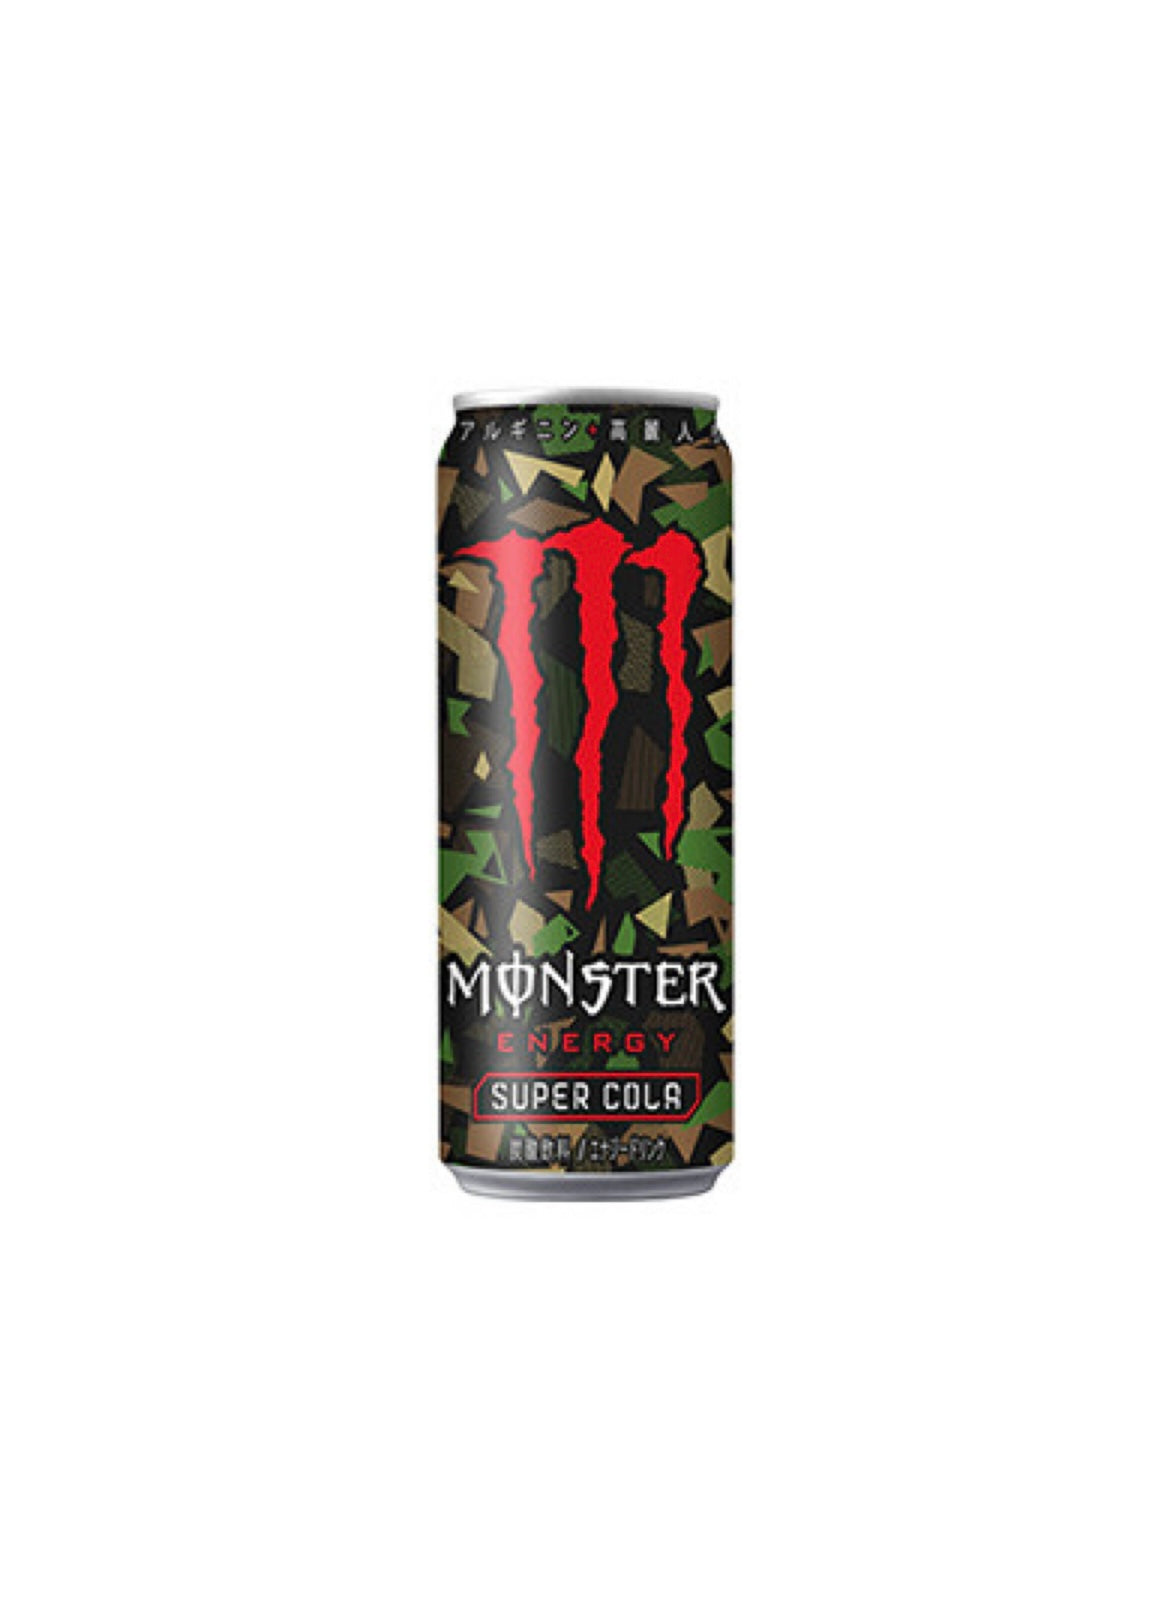 Monster Super Cola (Japan)